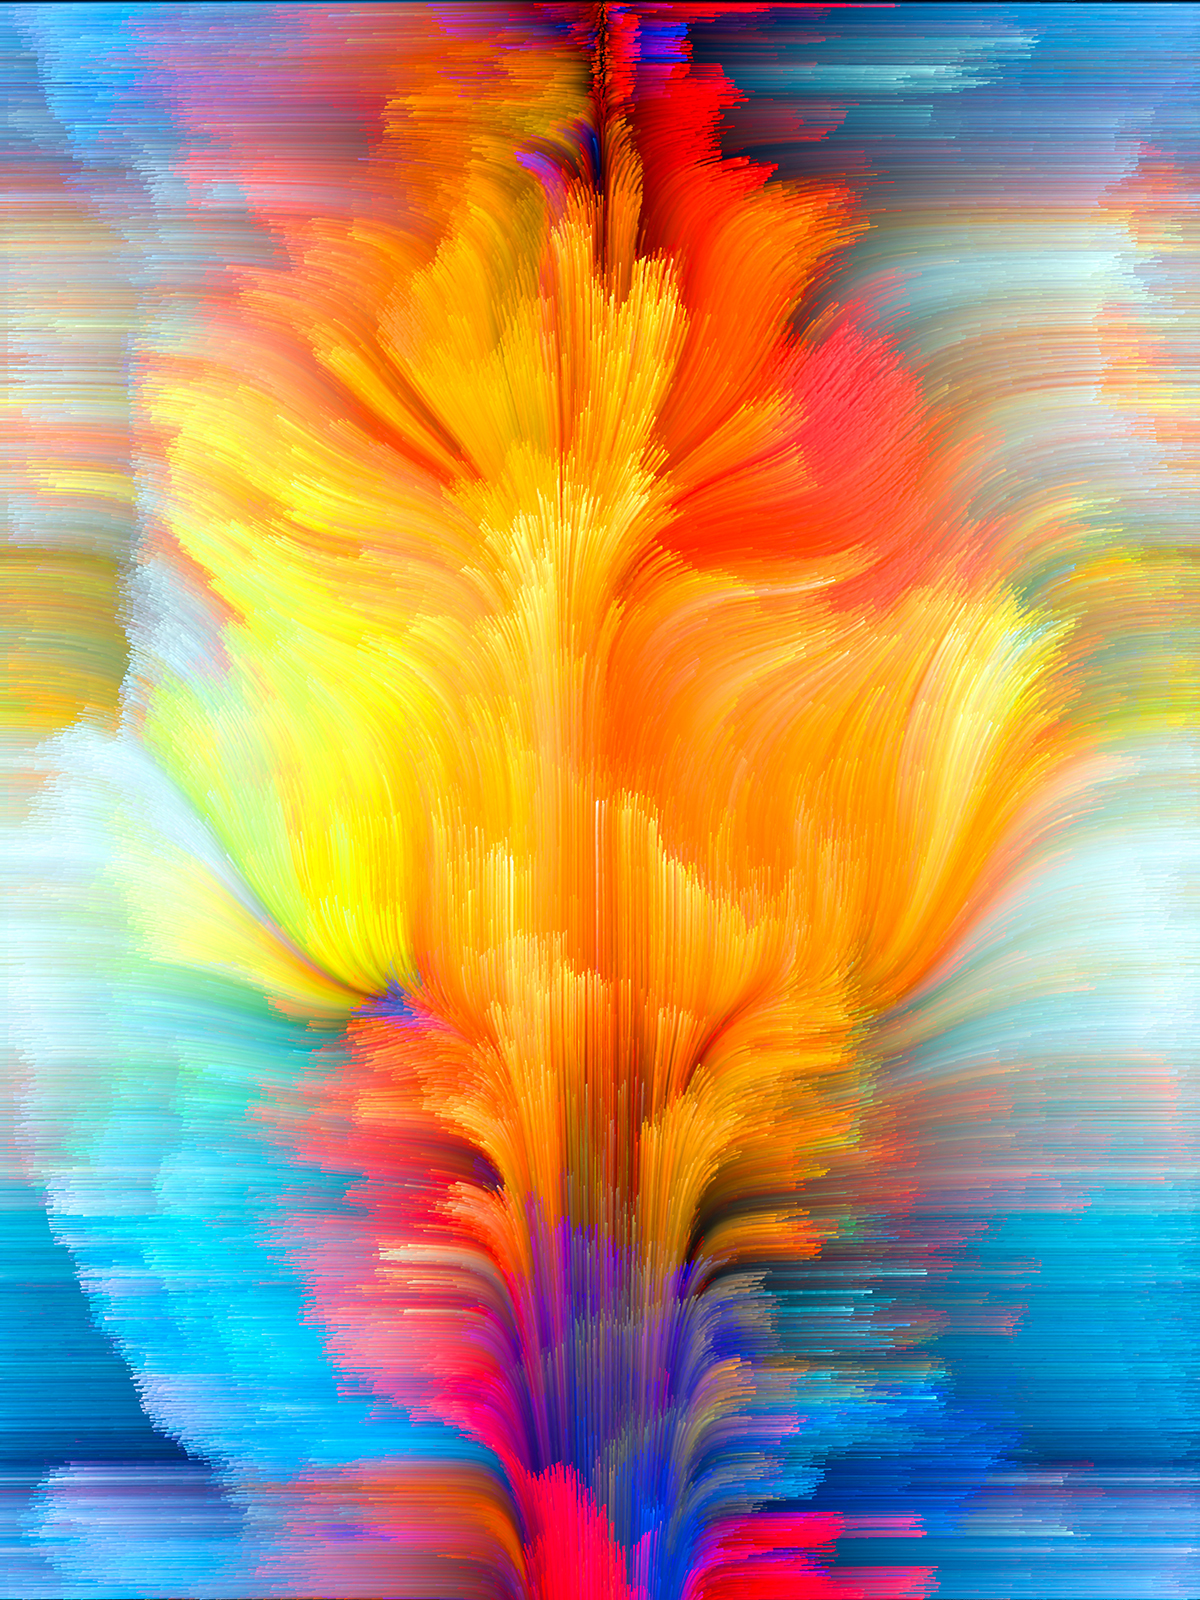 彩色渐变创意抽象线条梦幻水彩油画效果高清背景JPG图片设计素